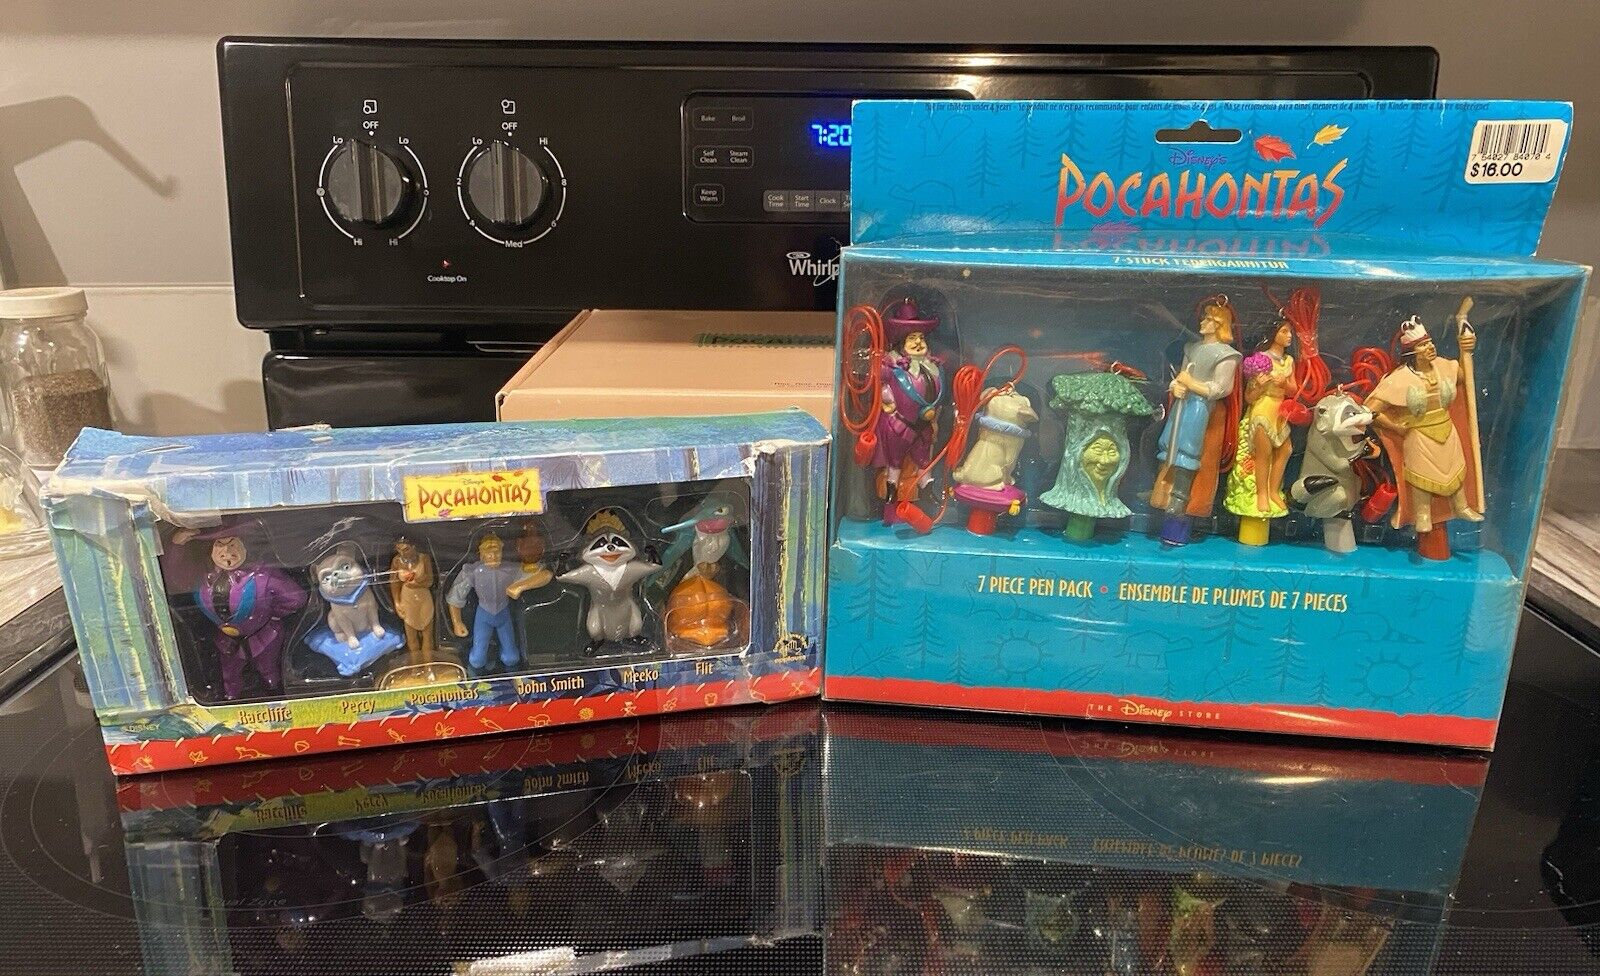 Pocahontas Figurine Set & Pocahontas￼Seven Piece Pin Pack